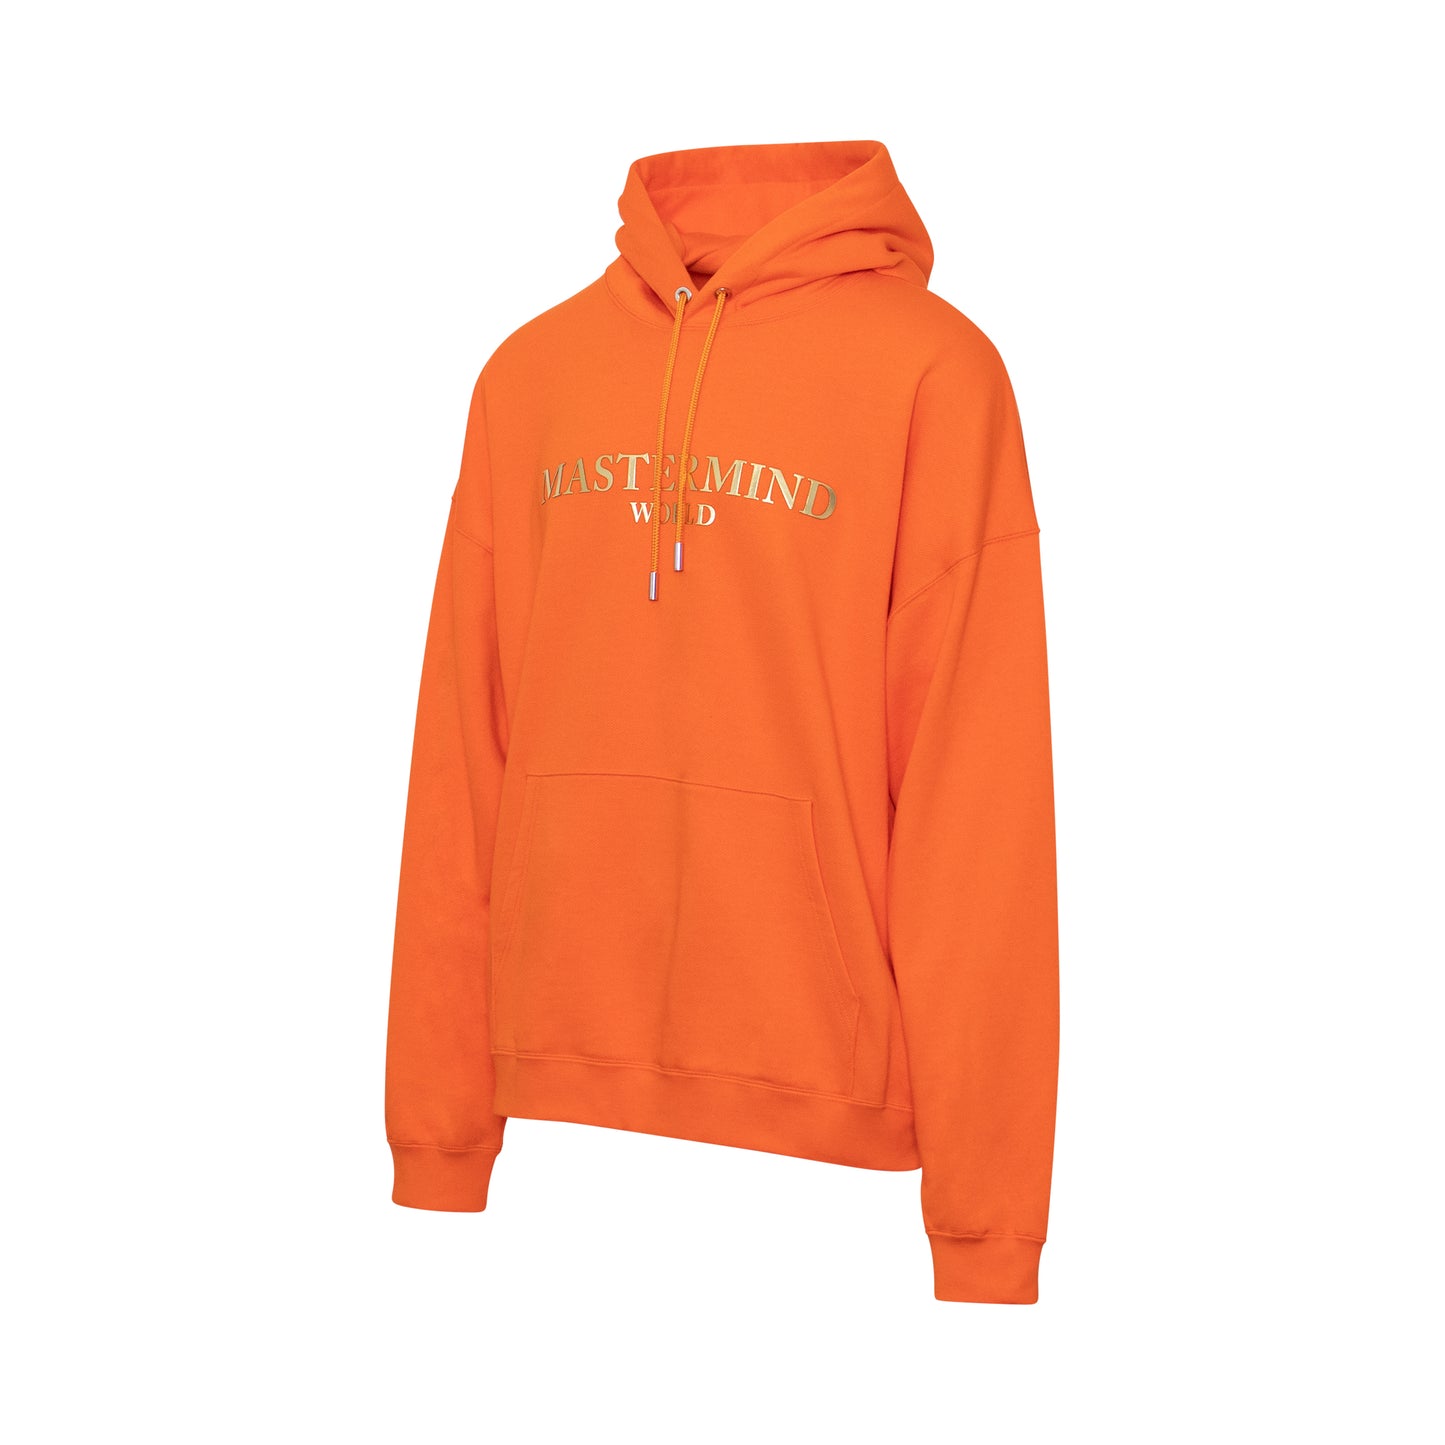 Mastermind World Sweatshirt in Orange